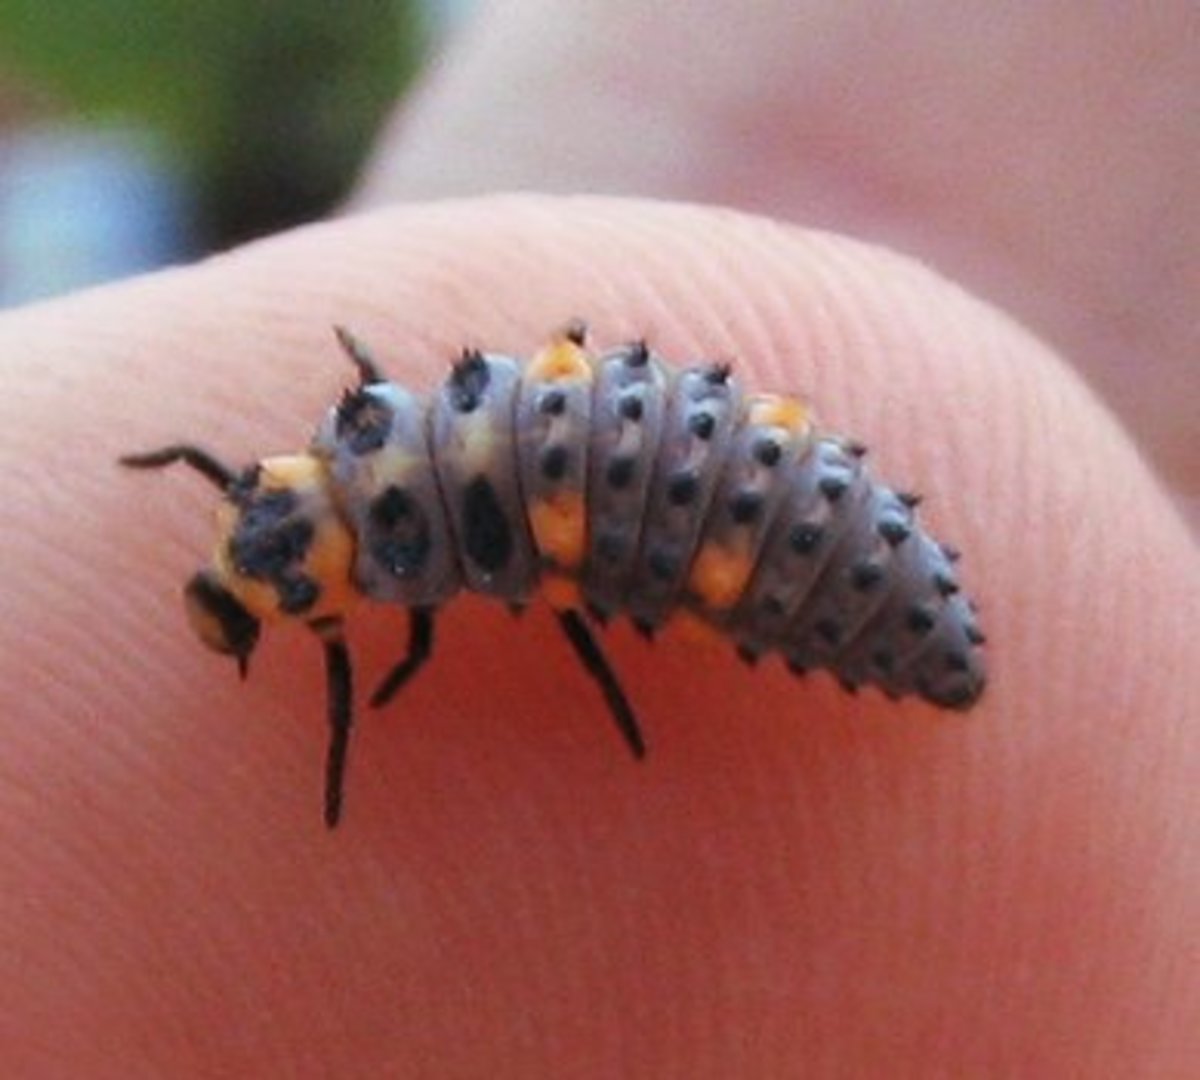 Ladybug larvae.  It looks a little like an alligator.